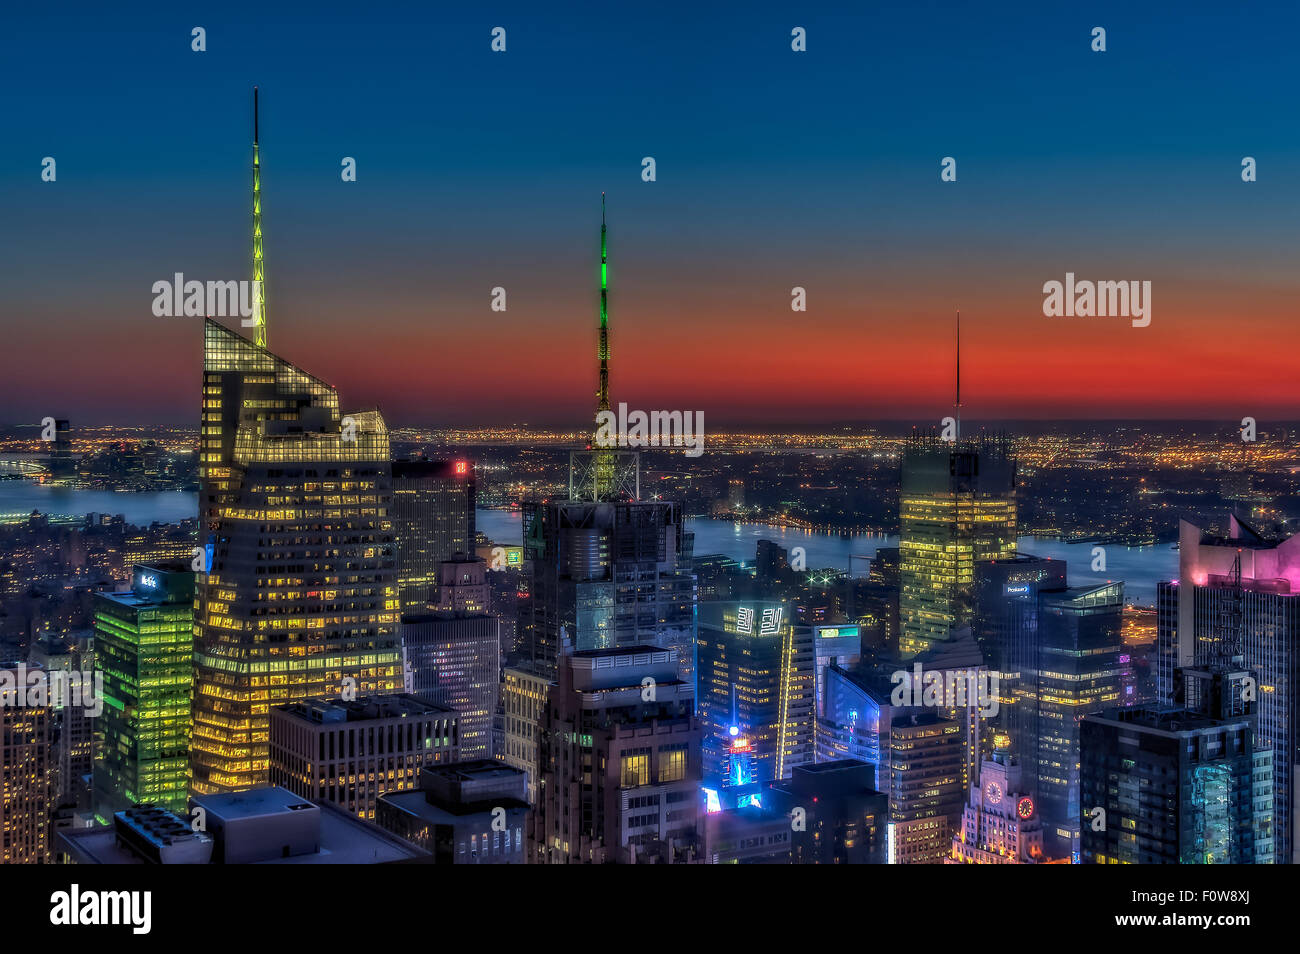 Obere Ansicht auf die beleuchtete Wolkenkratzer in Midtown Manhattan, die die Skyline von New York City während der Goldenen Stunde nach Sonnenuntergang. Stockfoto